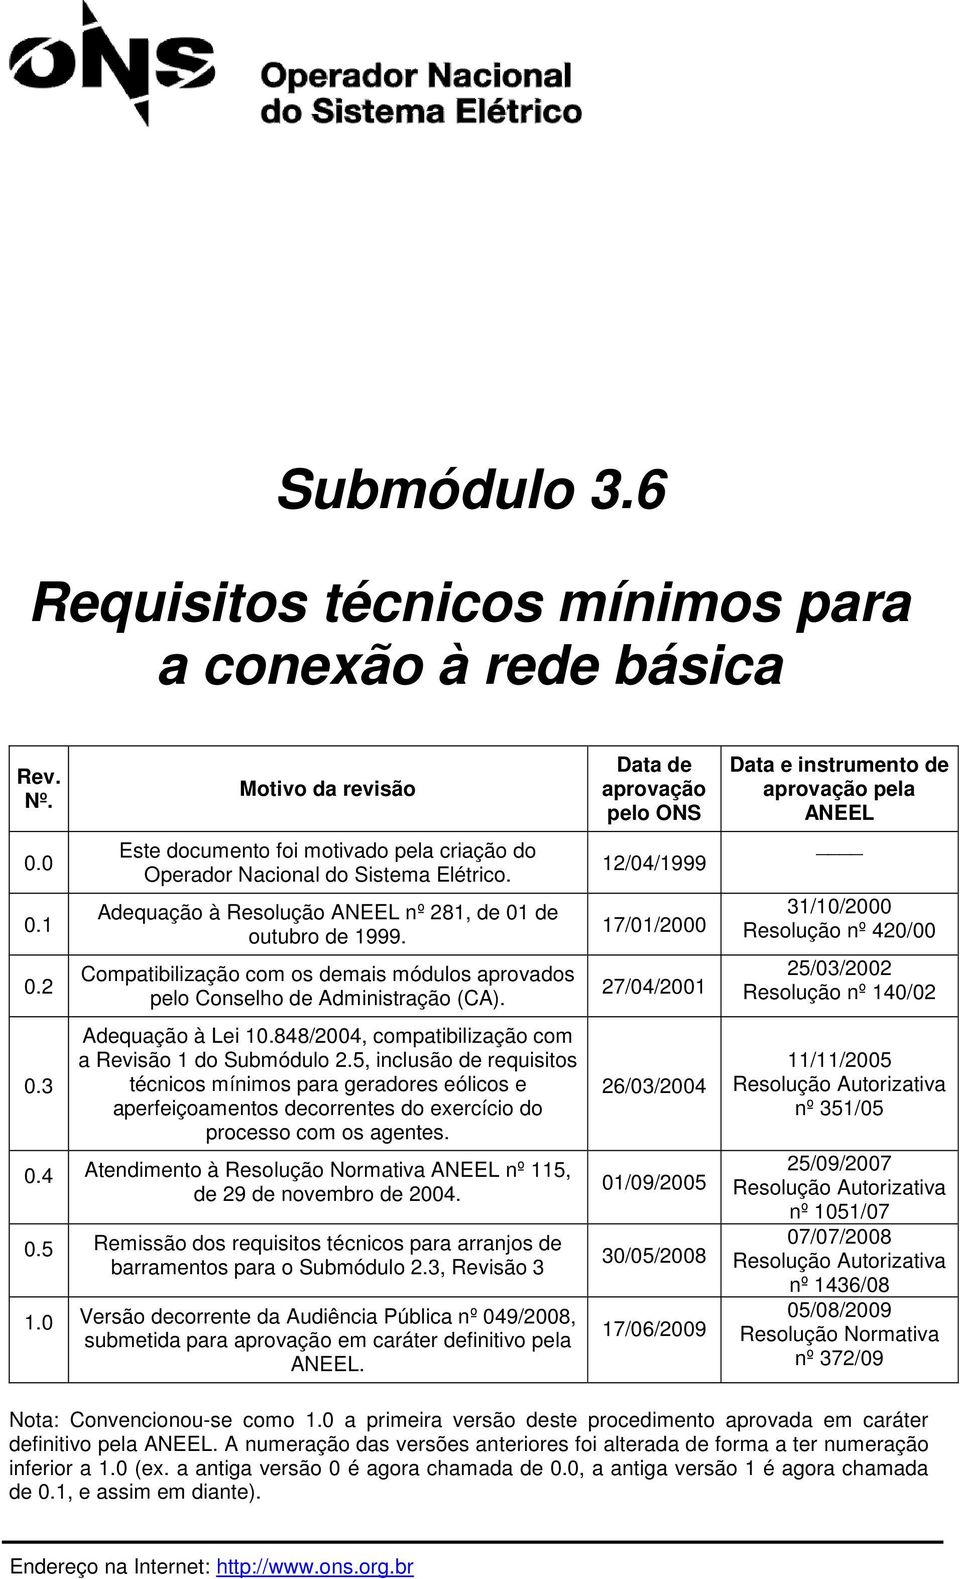 848/2004, compatibilização com a Revisão 1 do Submódulo 2.5, inclusão de requisitos técnicos mínimos para geradores eólicos e aperfeiçoamentos decorrentes do exercício do processo com os agentes. 0.